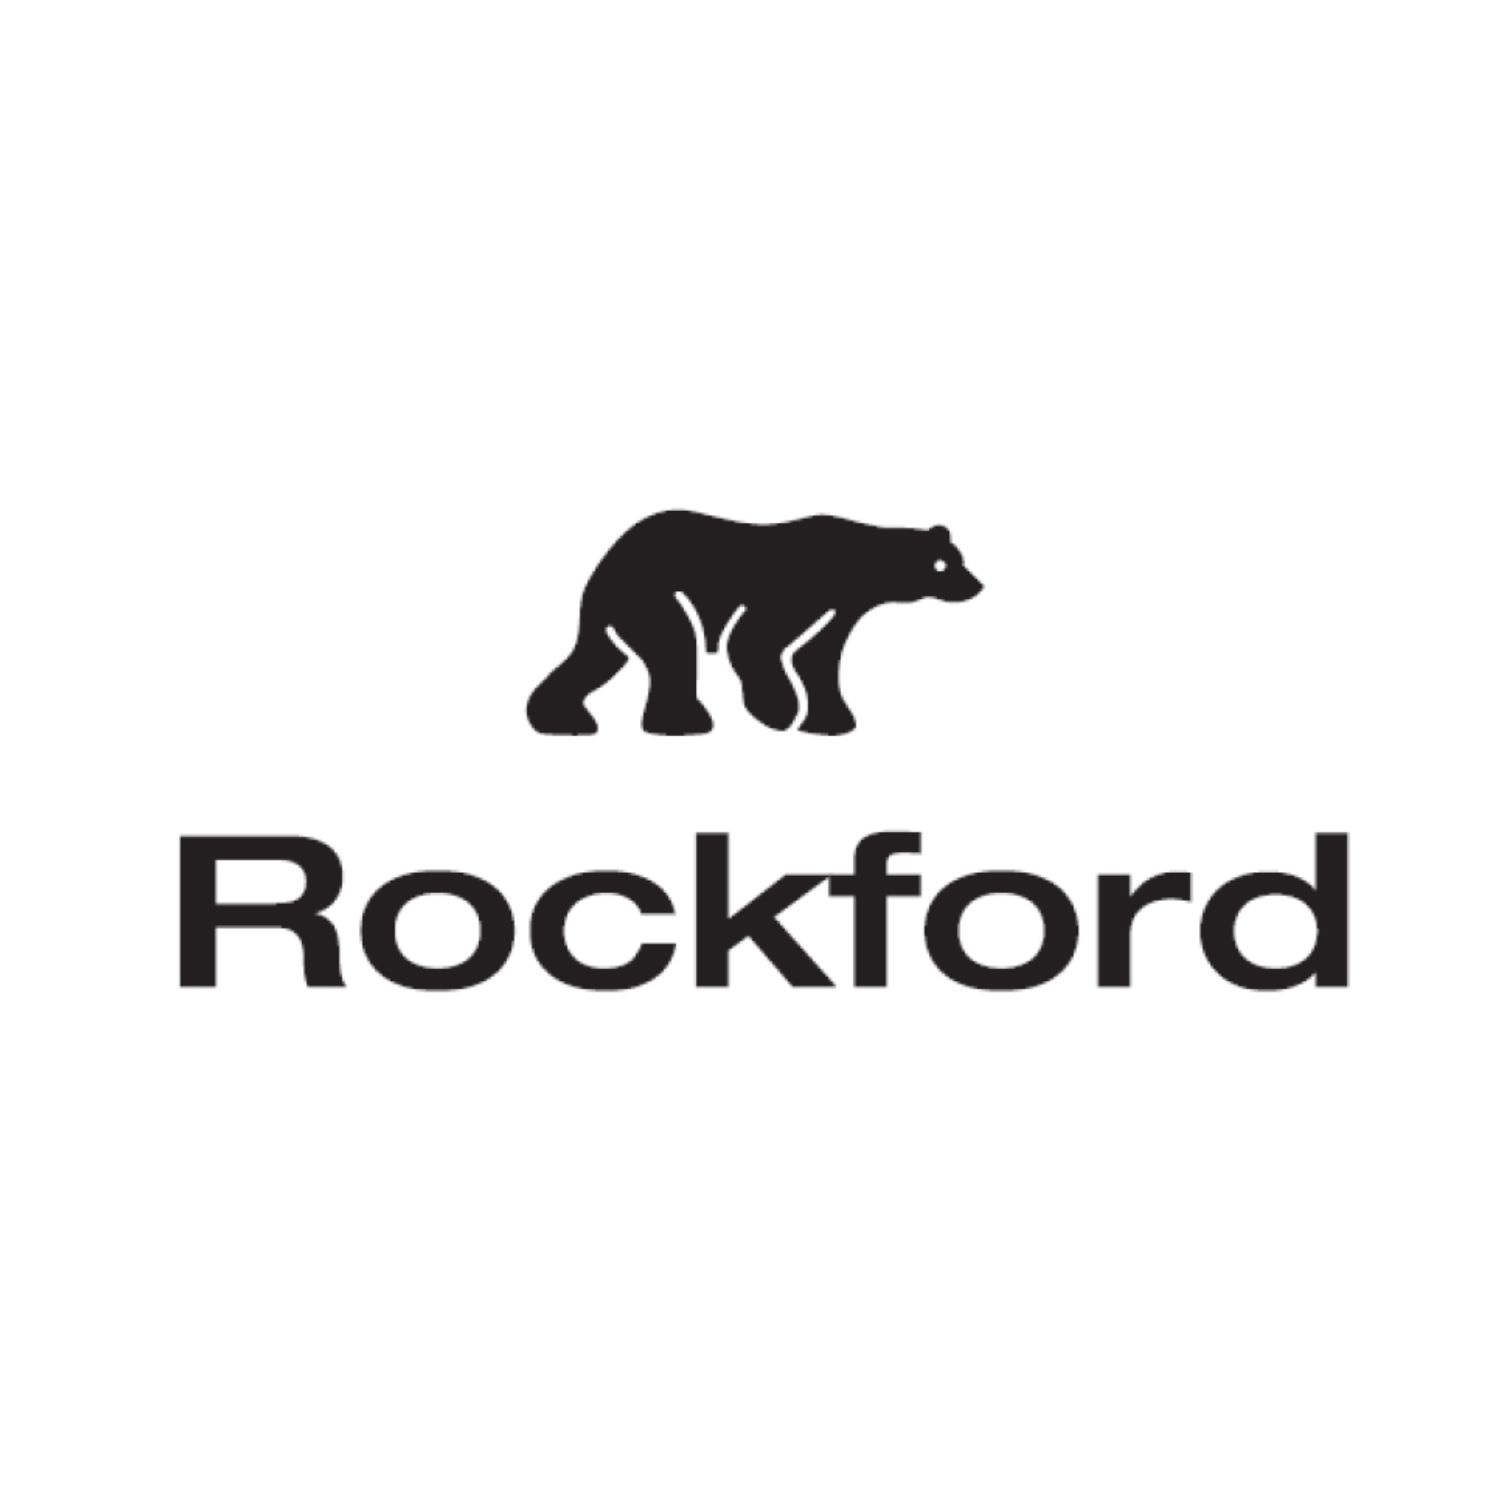 Rockford